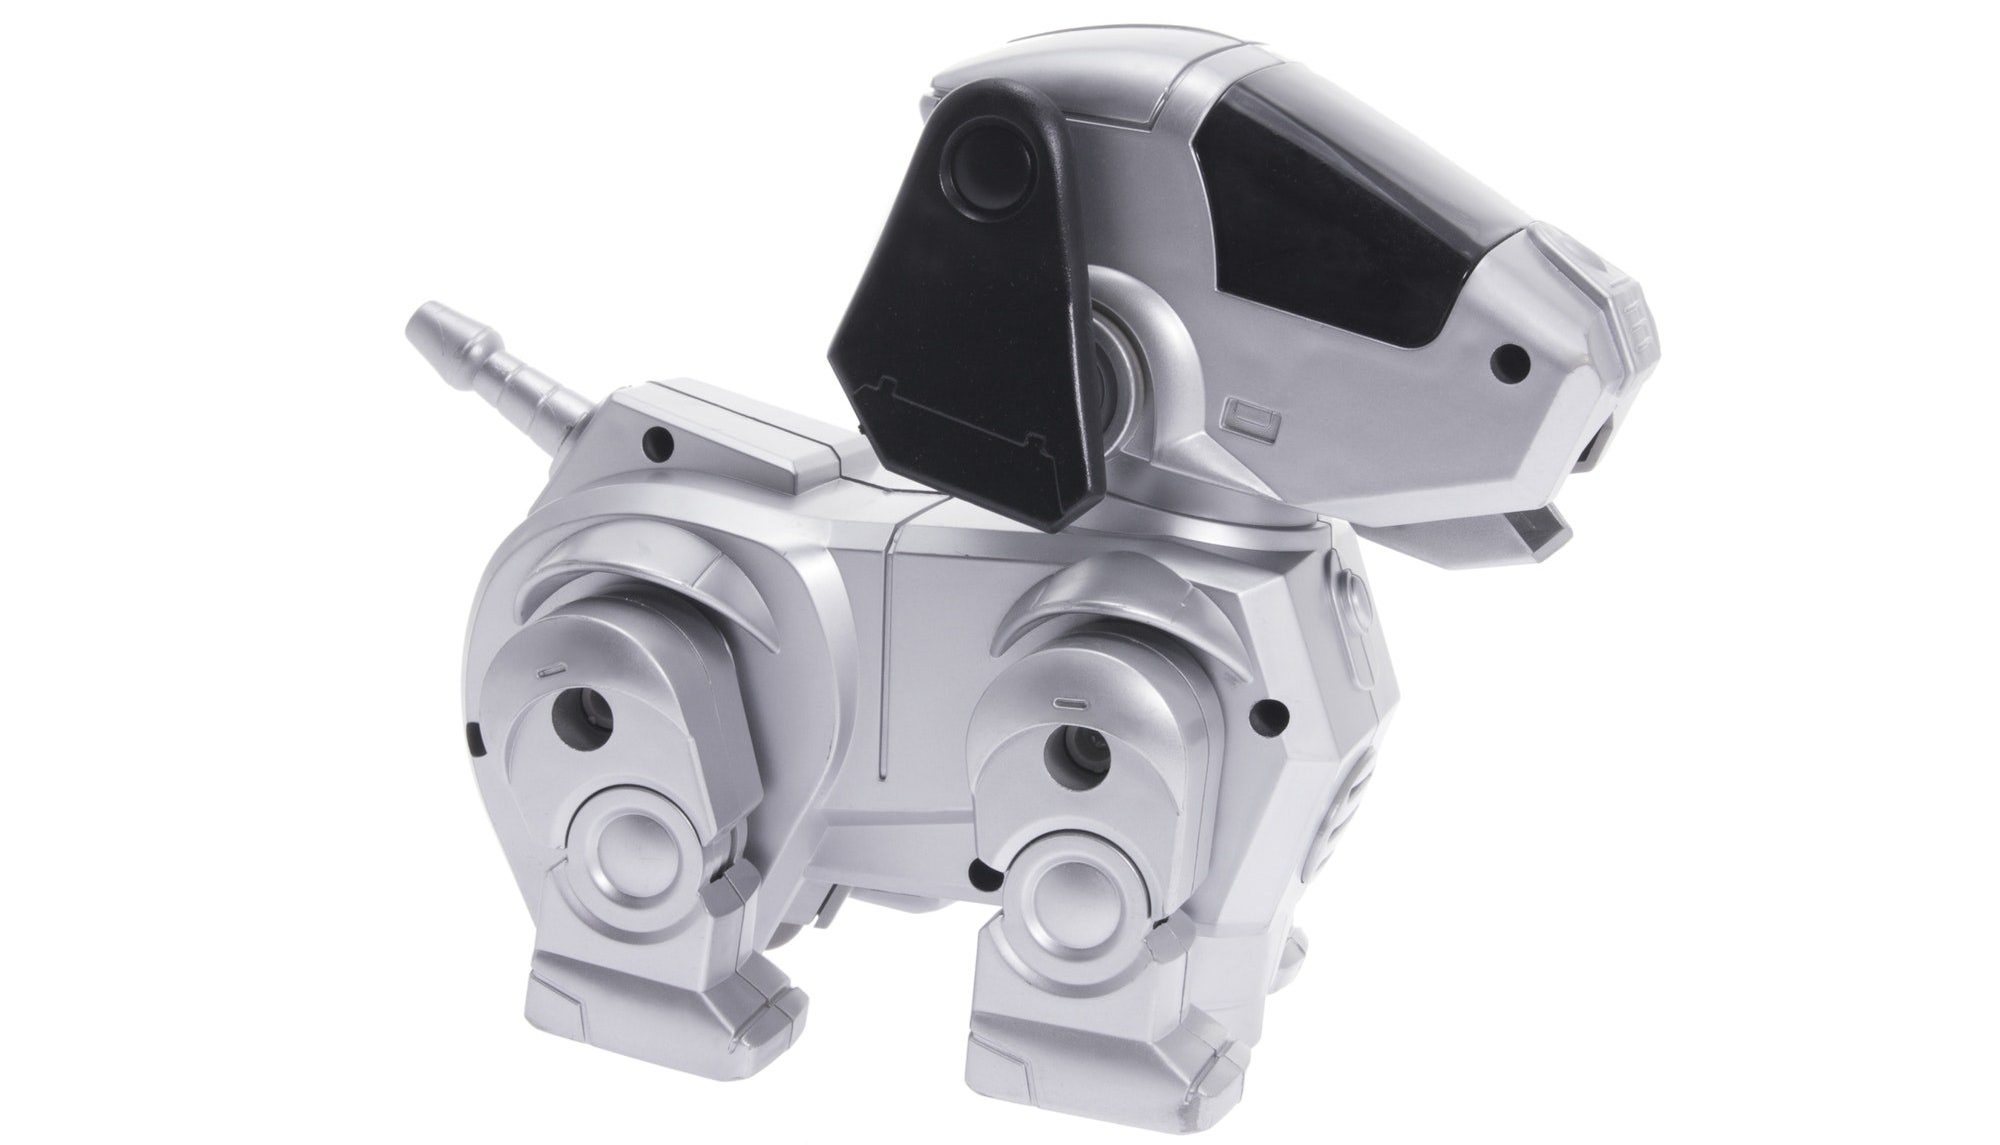 Toy Robot Dog